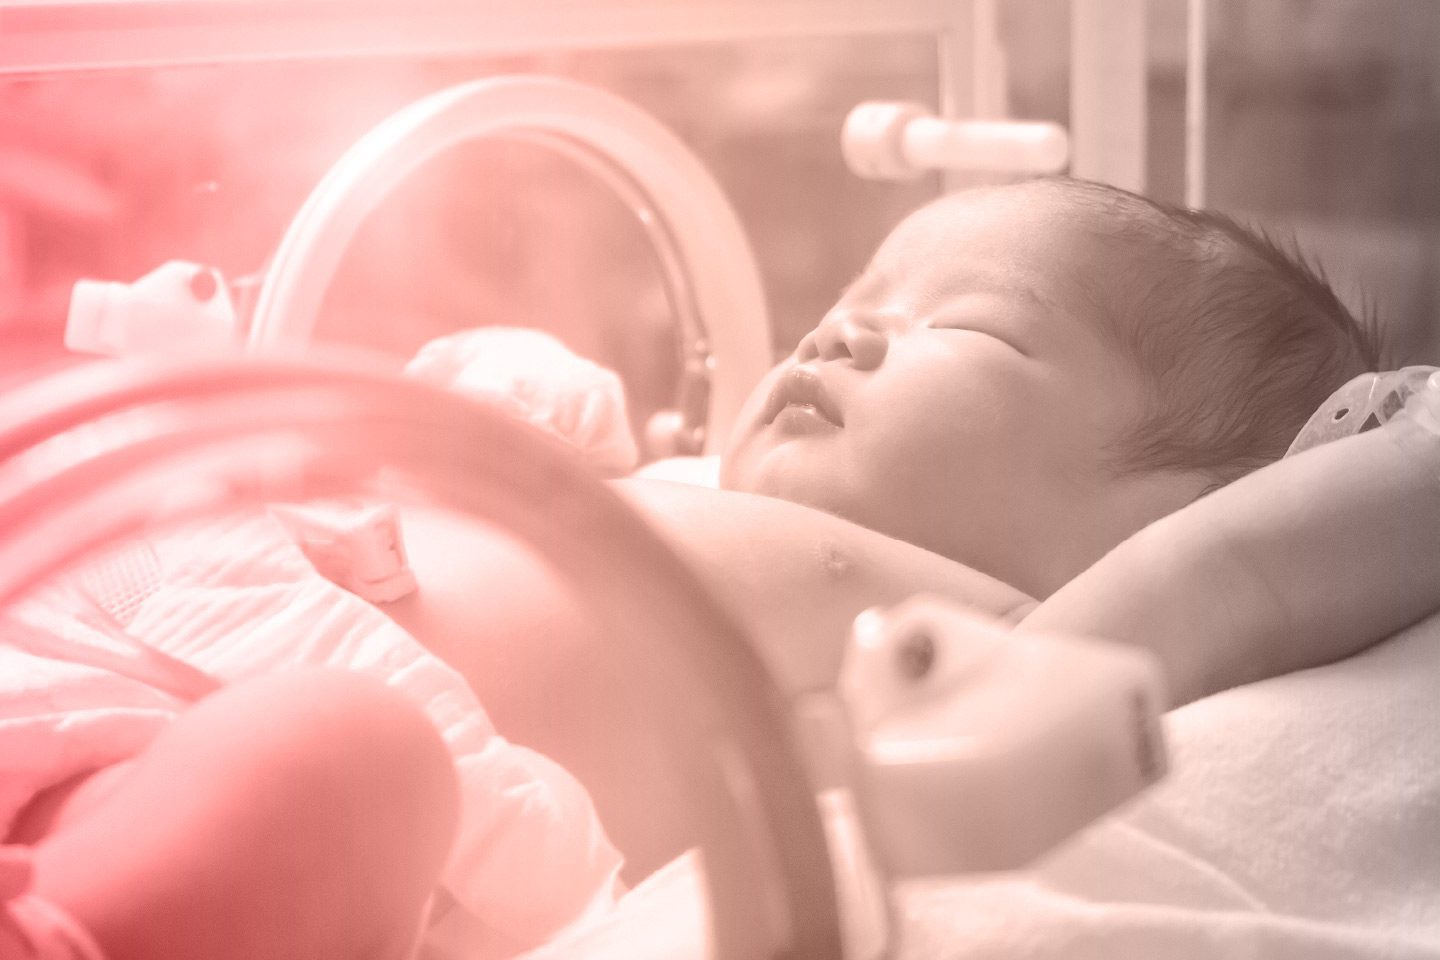 Premature baby in the NICU in an incubator